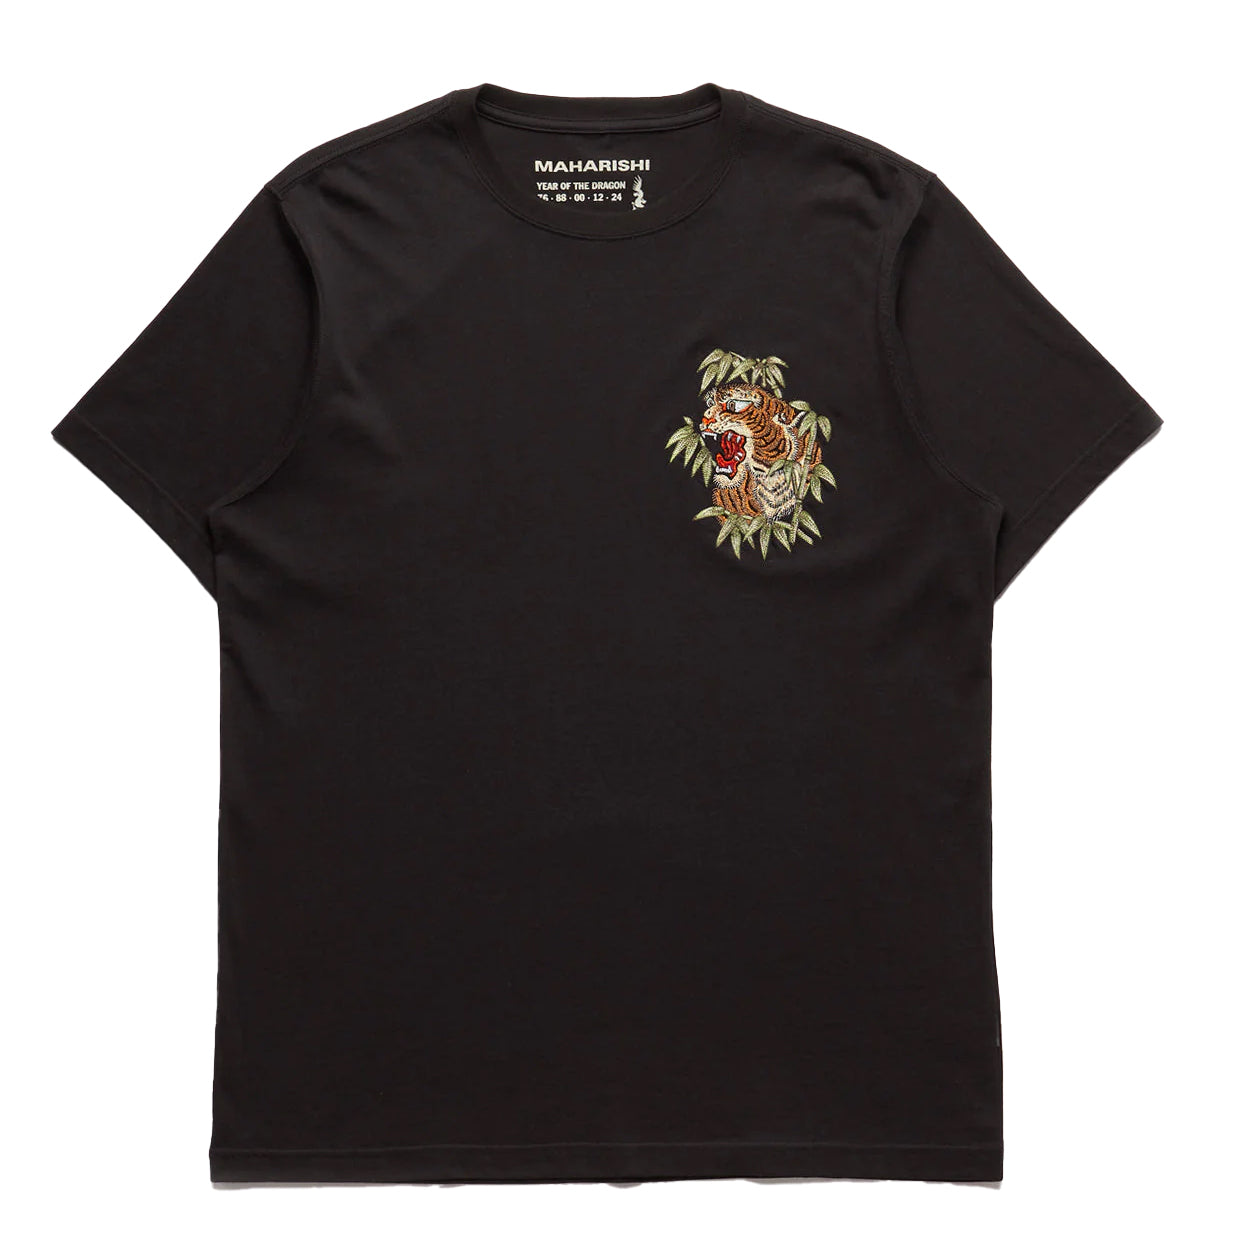 Maharishi Maha Tiger T-Shirt Black